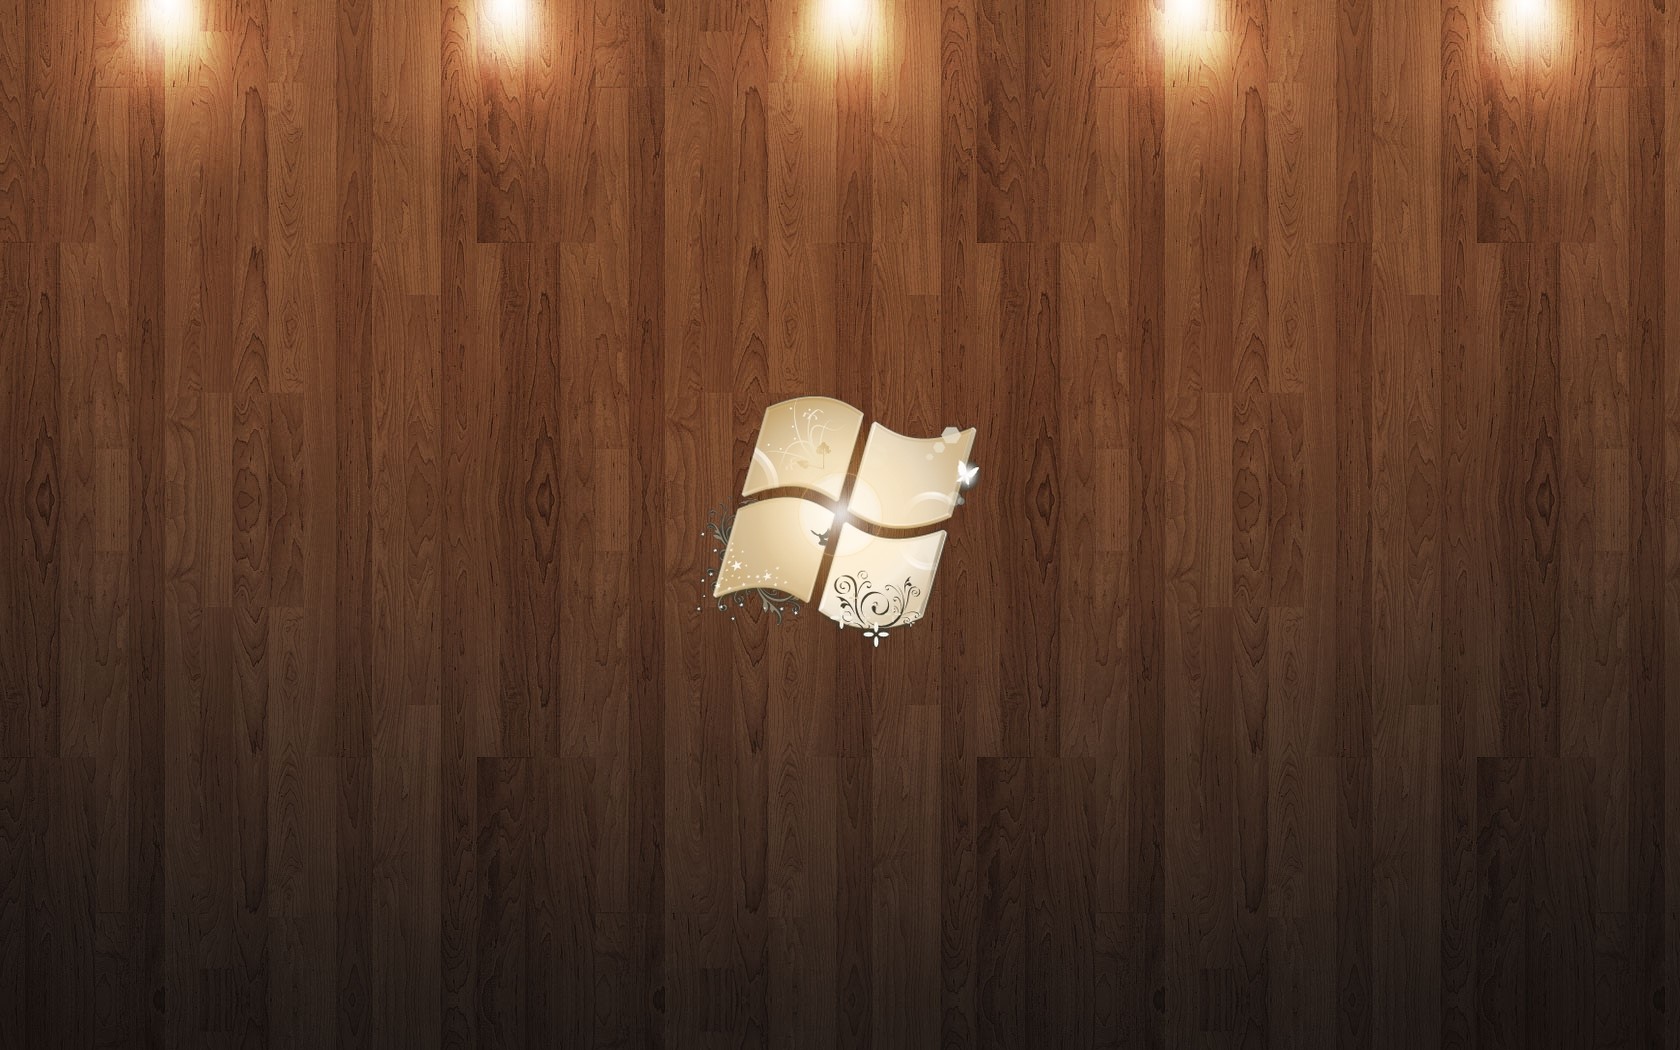 1680x1050 Windows, Wood, Parquet, Light, Logo wallpaper JPG